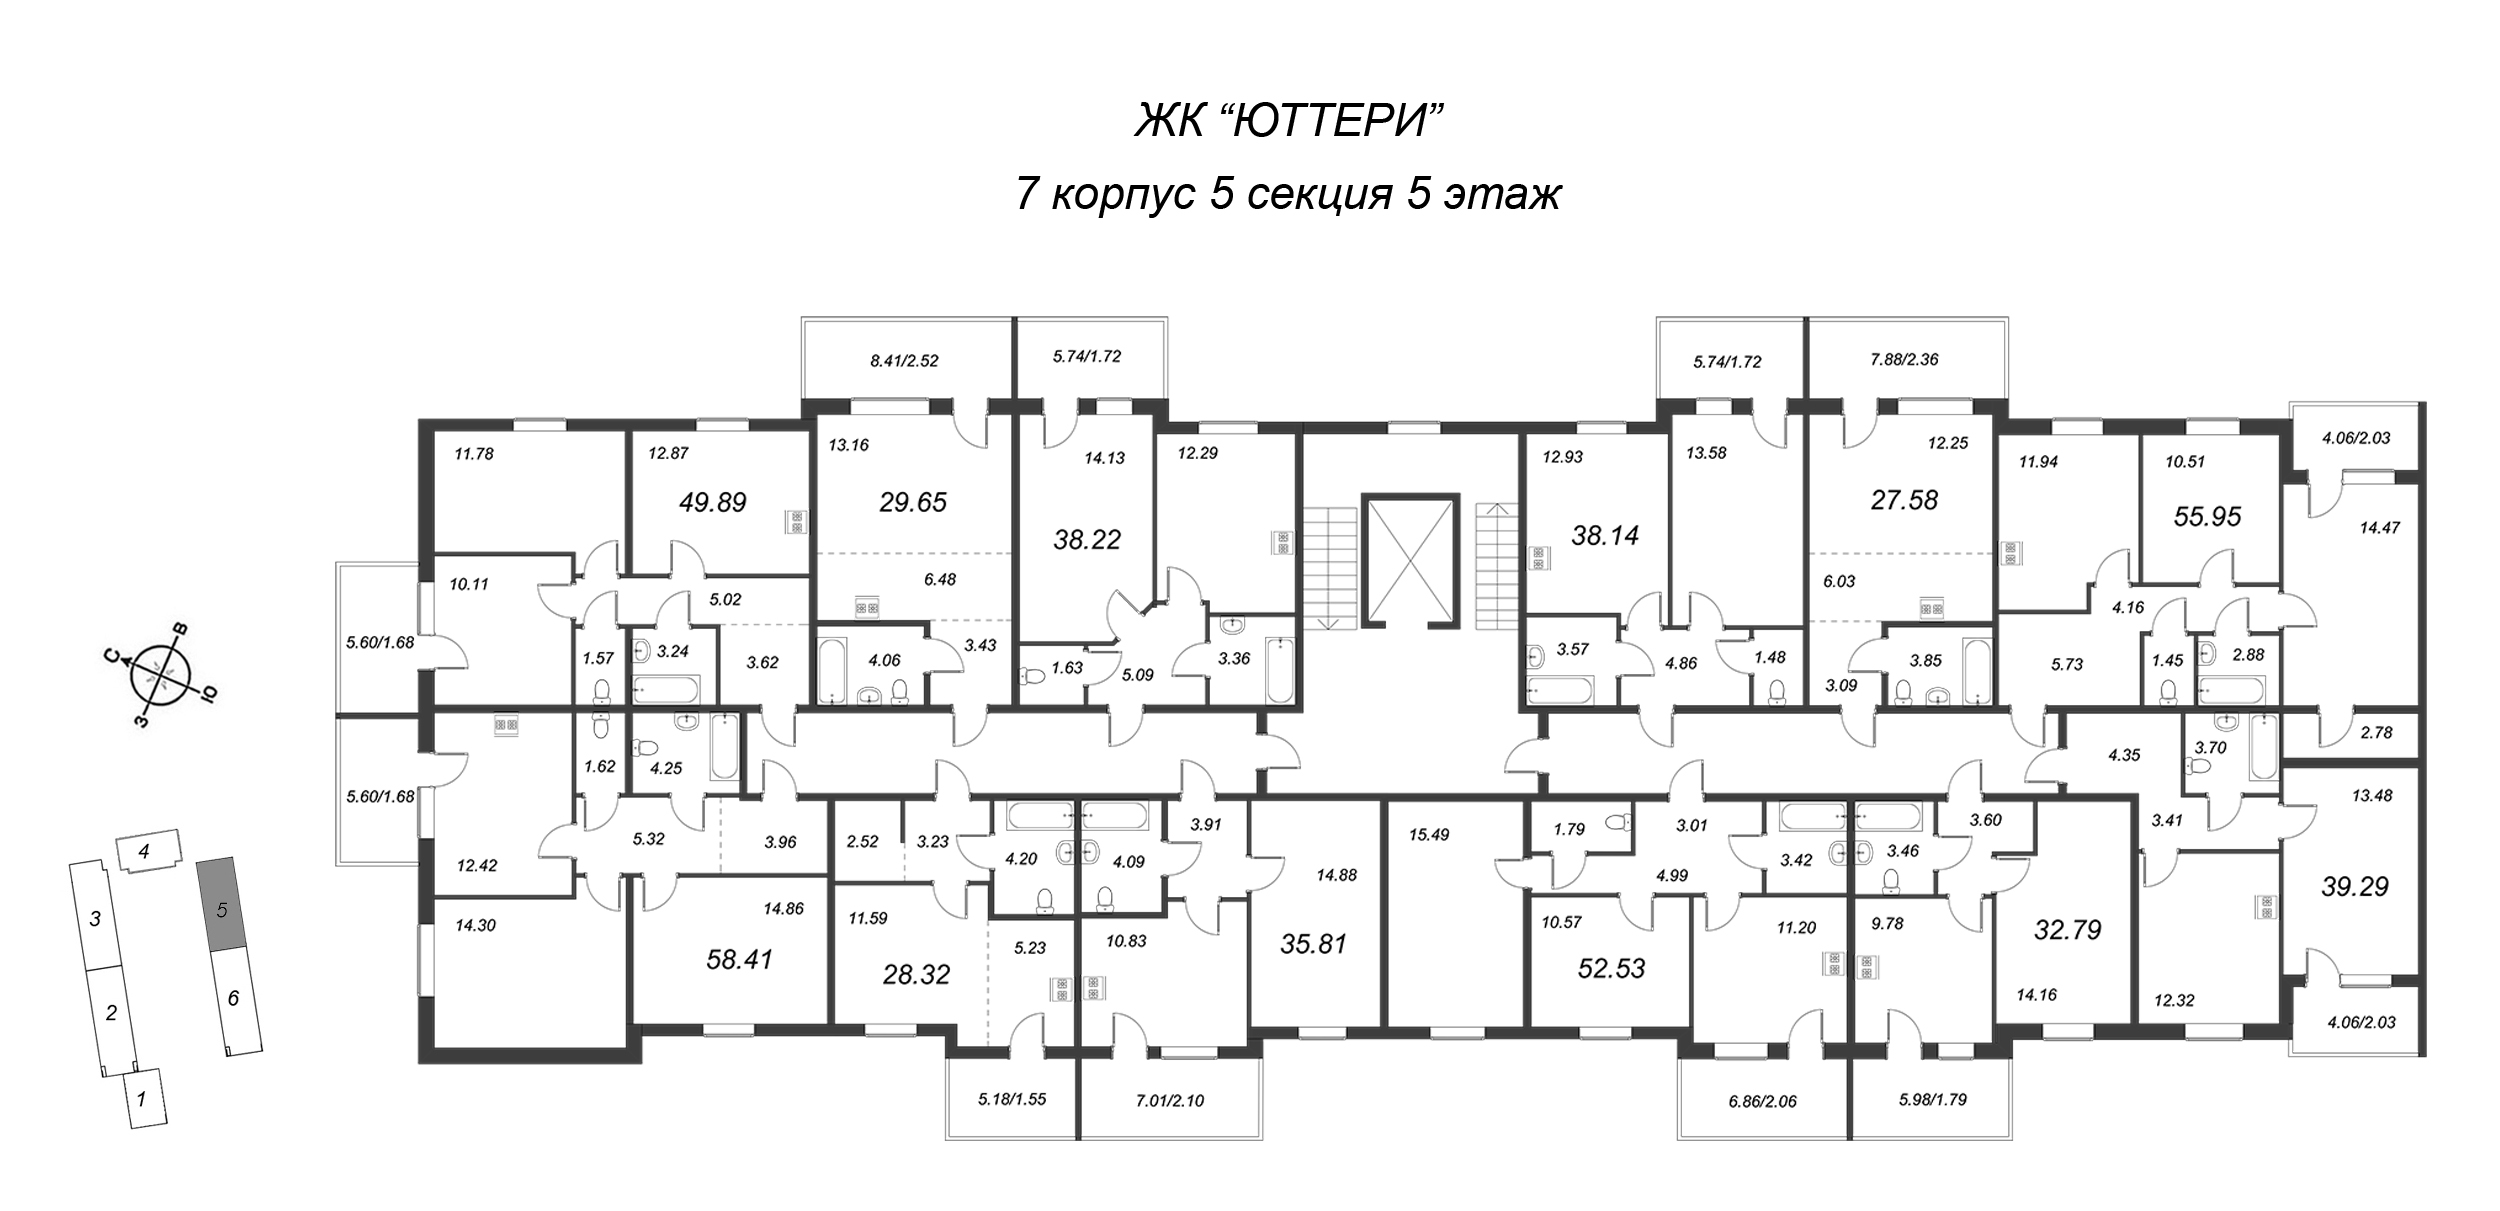 1-комнатная квартира, 37.26 м² в ЖК "Юттери" - планировка этажа